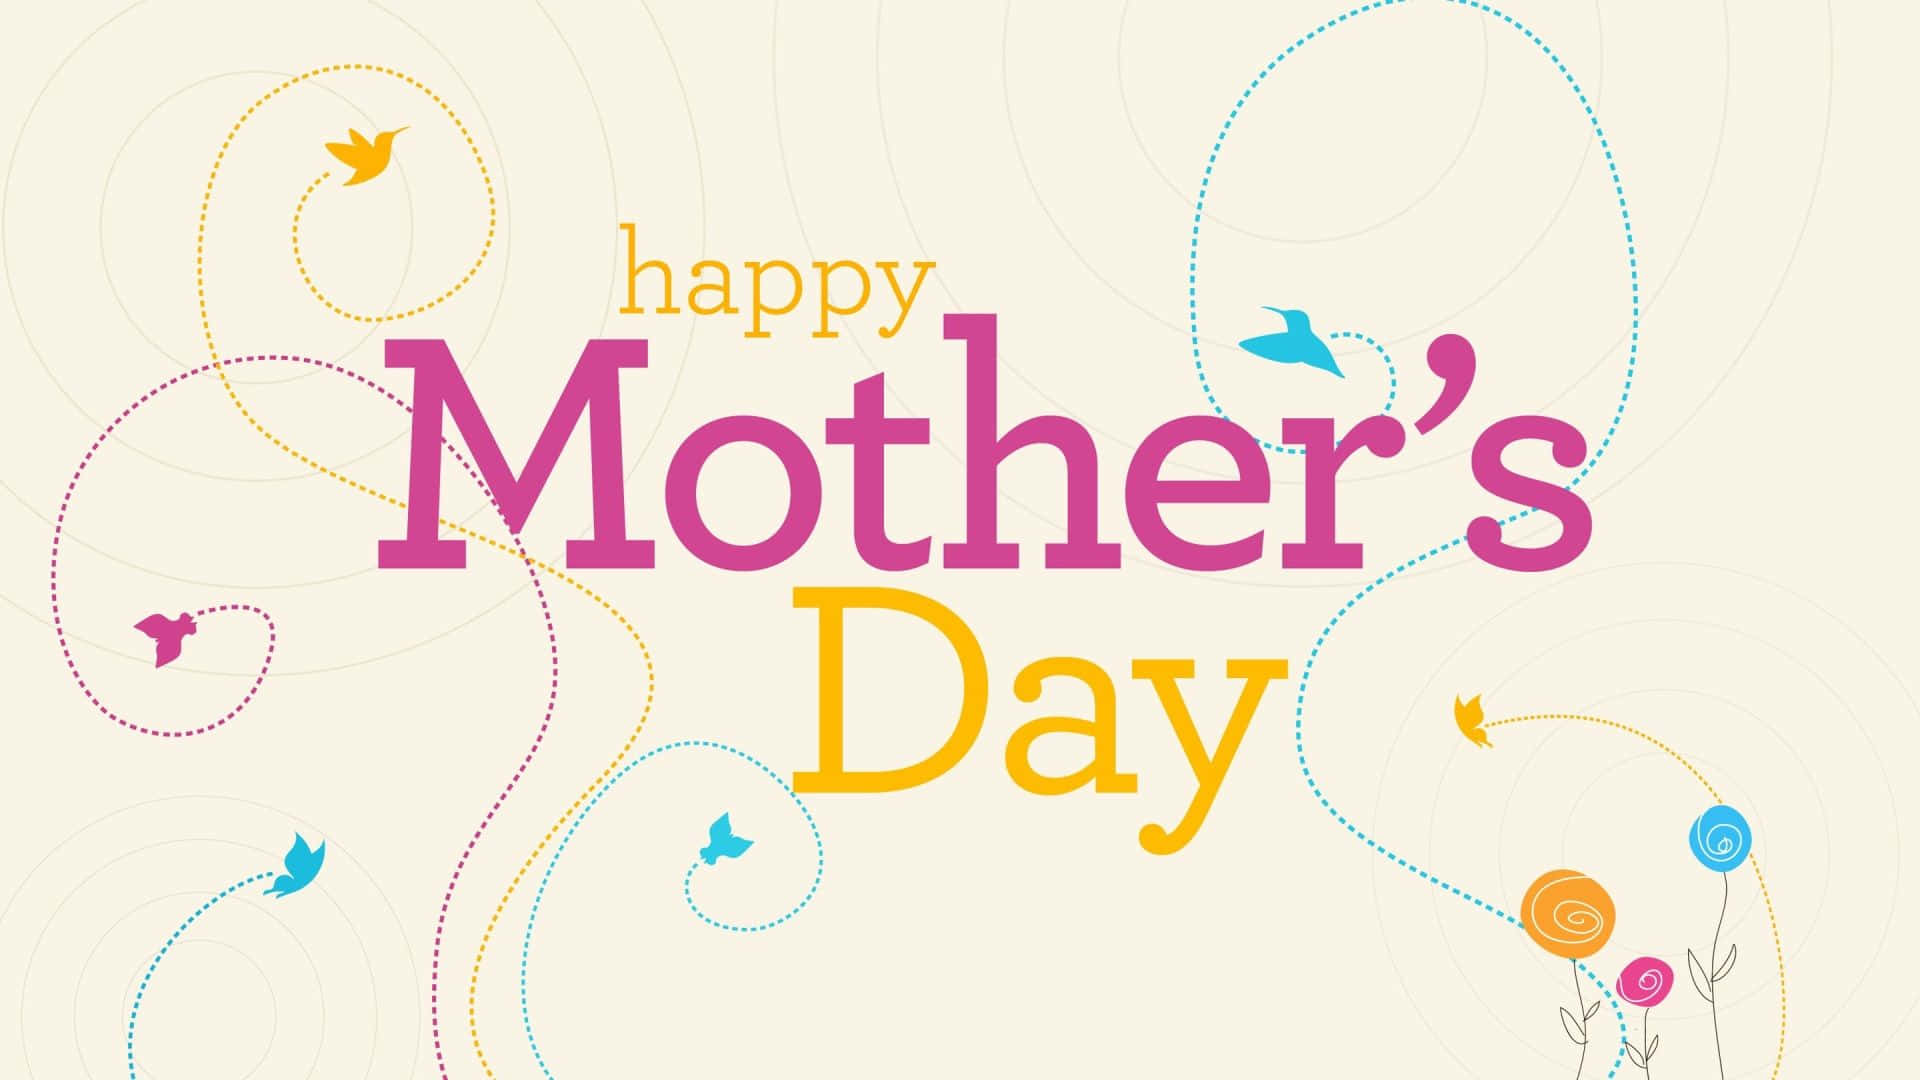 Fejr denne særlige dag med Happy Mothers Day HD wallpaper! Wallpaper